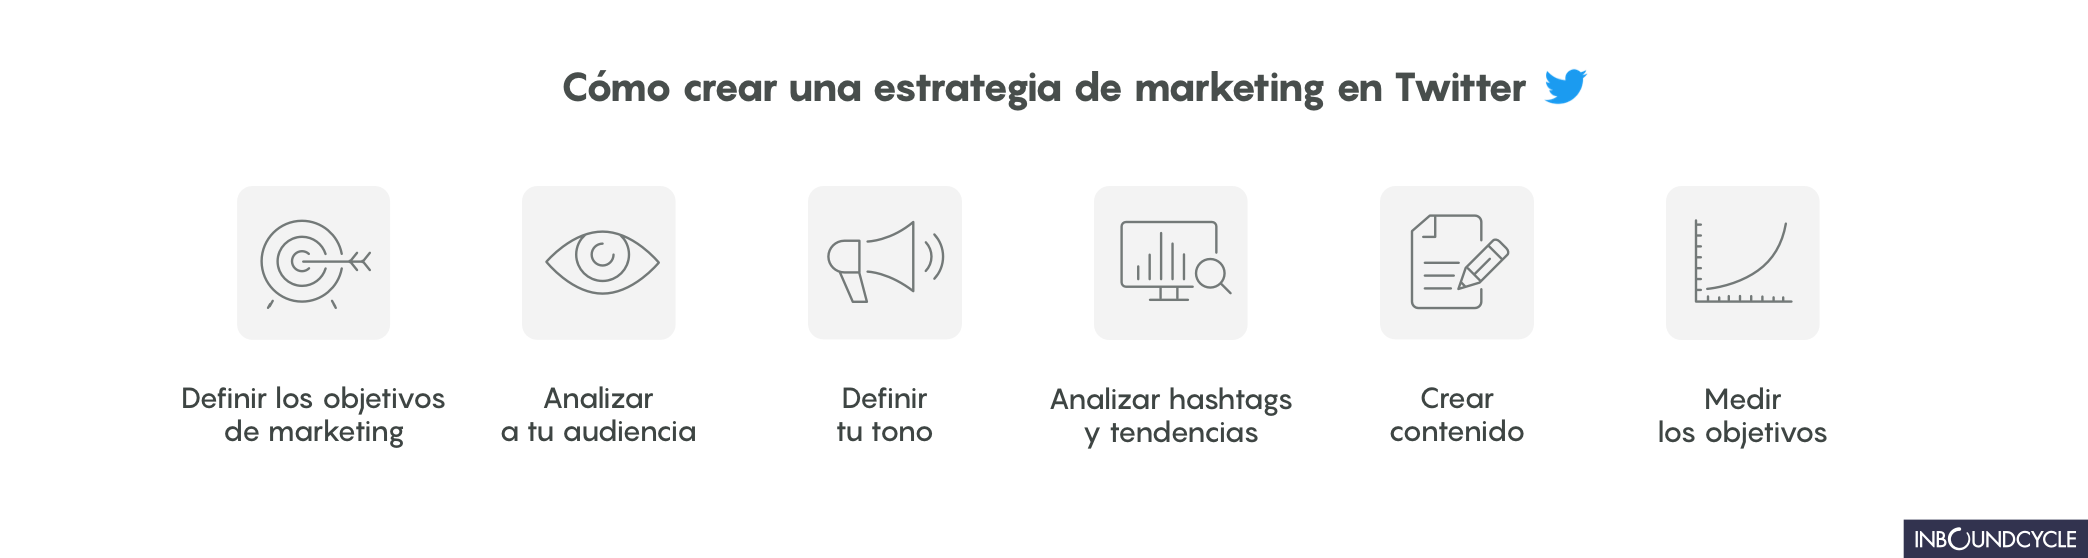 Cómo_crear_una_estrategia_de_marketing_en_Twitter